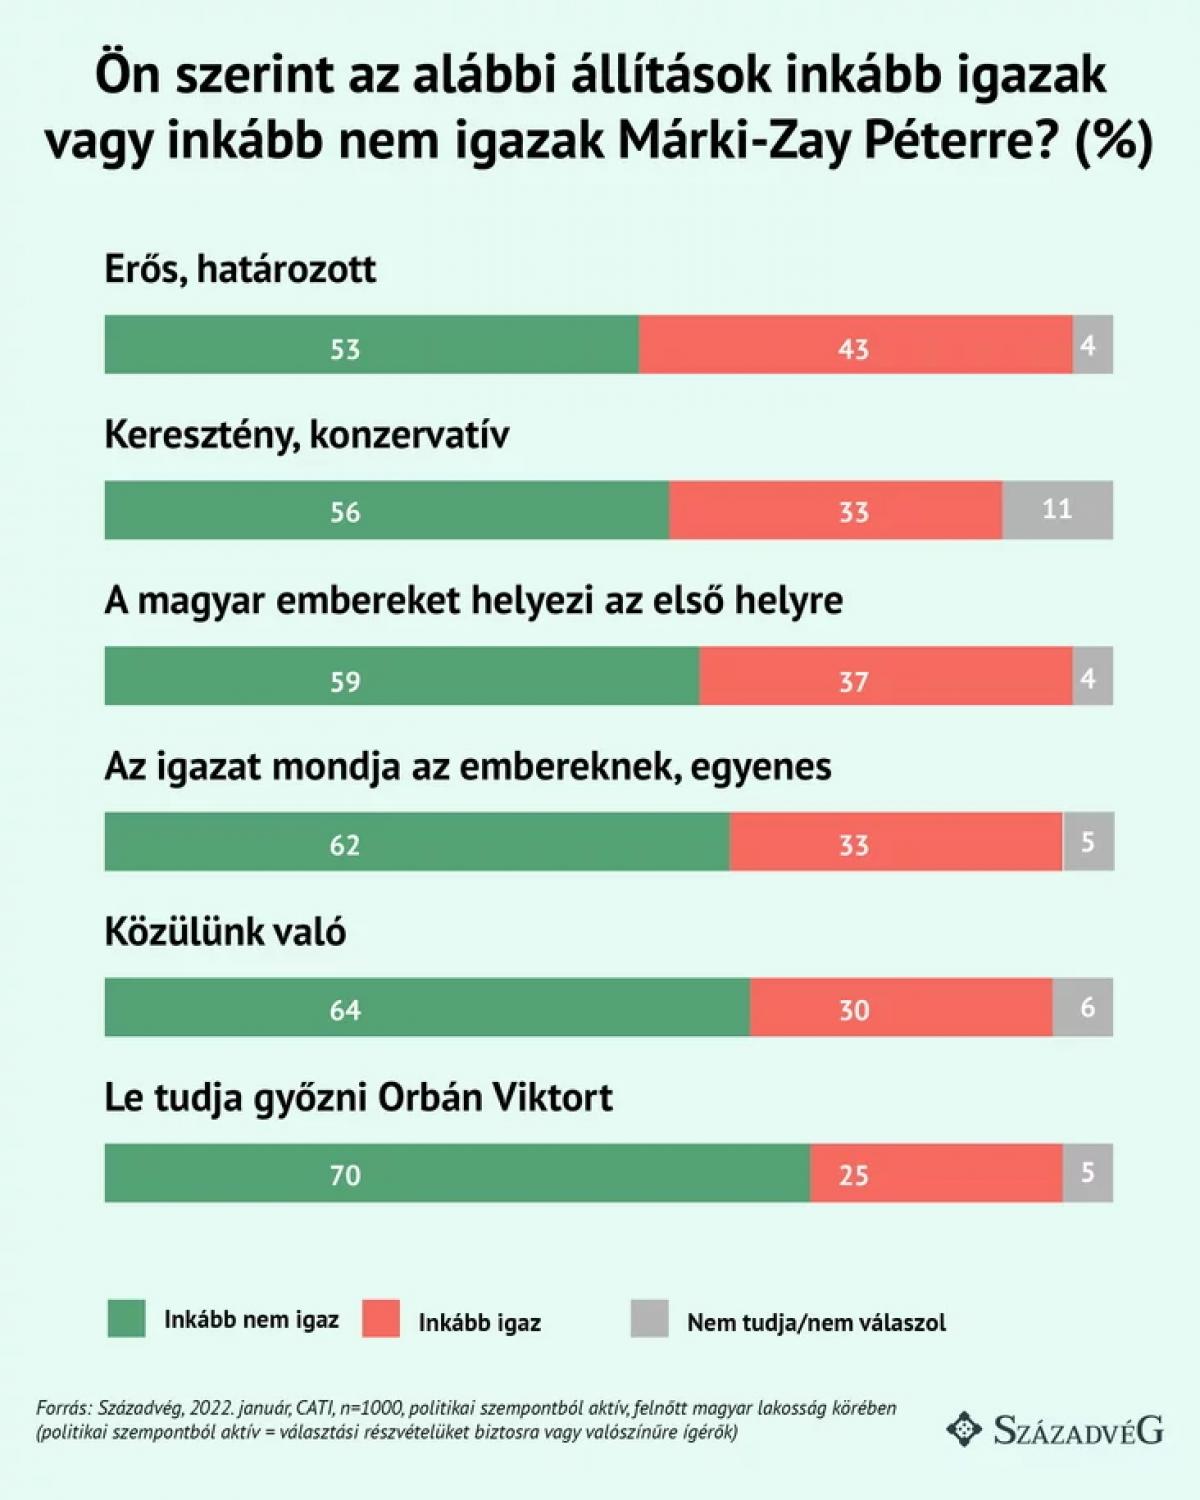 Tízből hat magyar nem tartja Márki-Zayt őszintének és egyenesnek